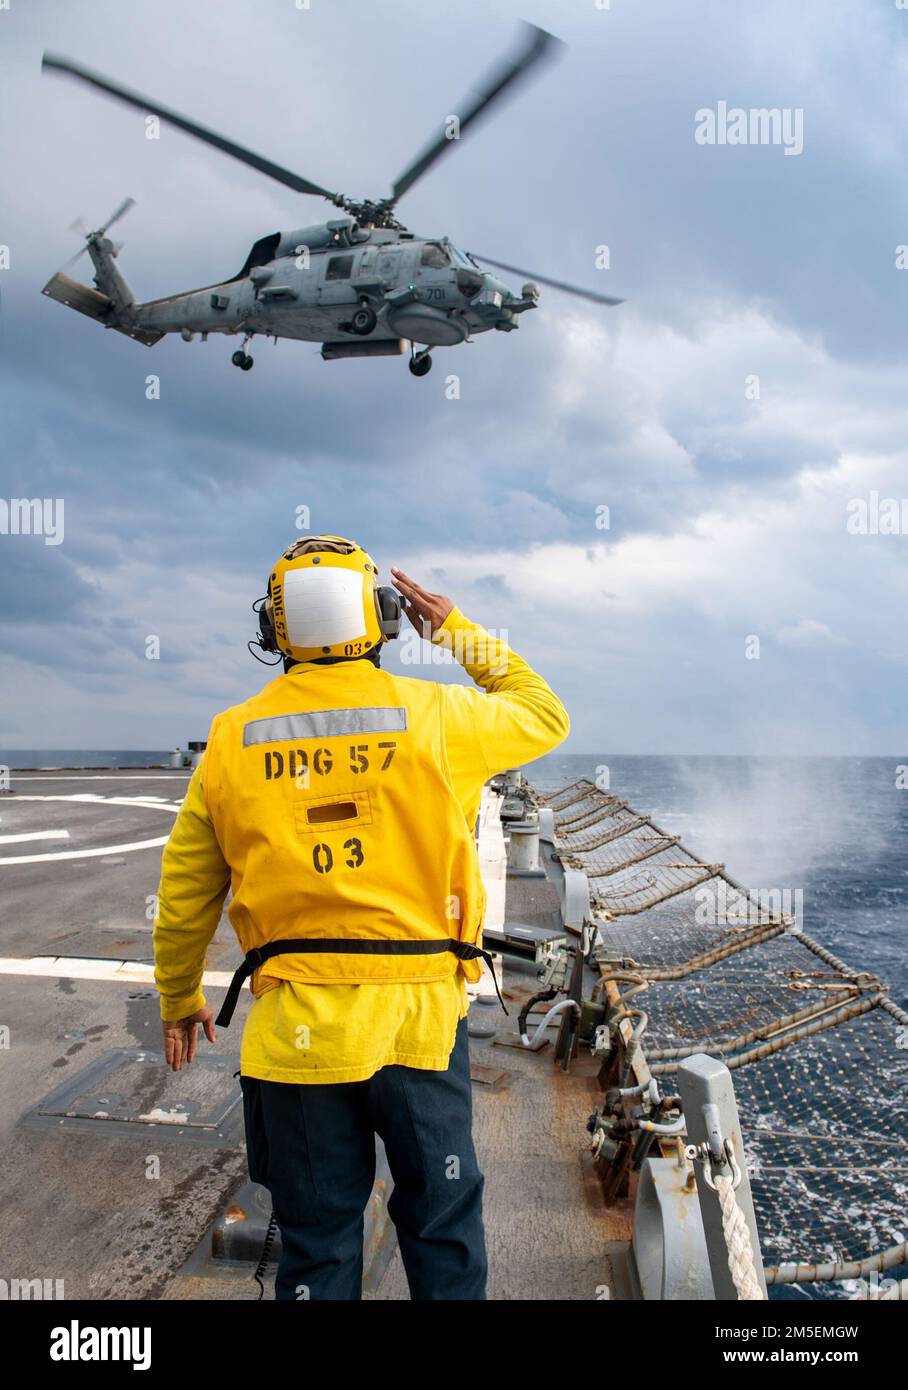 220308-N-HG846-2088 IONISCHES MEER (8. März 2022) – Boatswain’s Mate 3. Class Tra'shaun Cooper, aus Homestead, Texas, salutiert die Piloten eines MH-60R Sea Hawk Hubschraubers, der den „Stolzen Kriegern“ des Helicopter Maritime Strike Squadron (HSM) 72 zugeteilt wurde, während sie das Flugdeck der USS-Burscher-gesteuerten Rakete verlassen (DDG 57), 8. März 2022. Mitscher ist derzeit bei der Harry S. Truman Carrier Strike Group in den USA stationiert Sechster Flottenbereich zur Unterstützung der Interessen der USA, Verbündeten und Partner in Europa und Afrika. Stockfoto